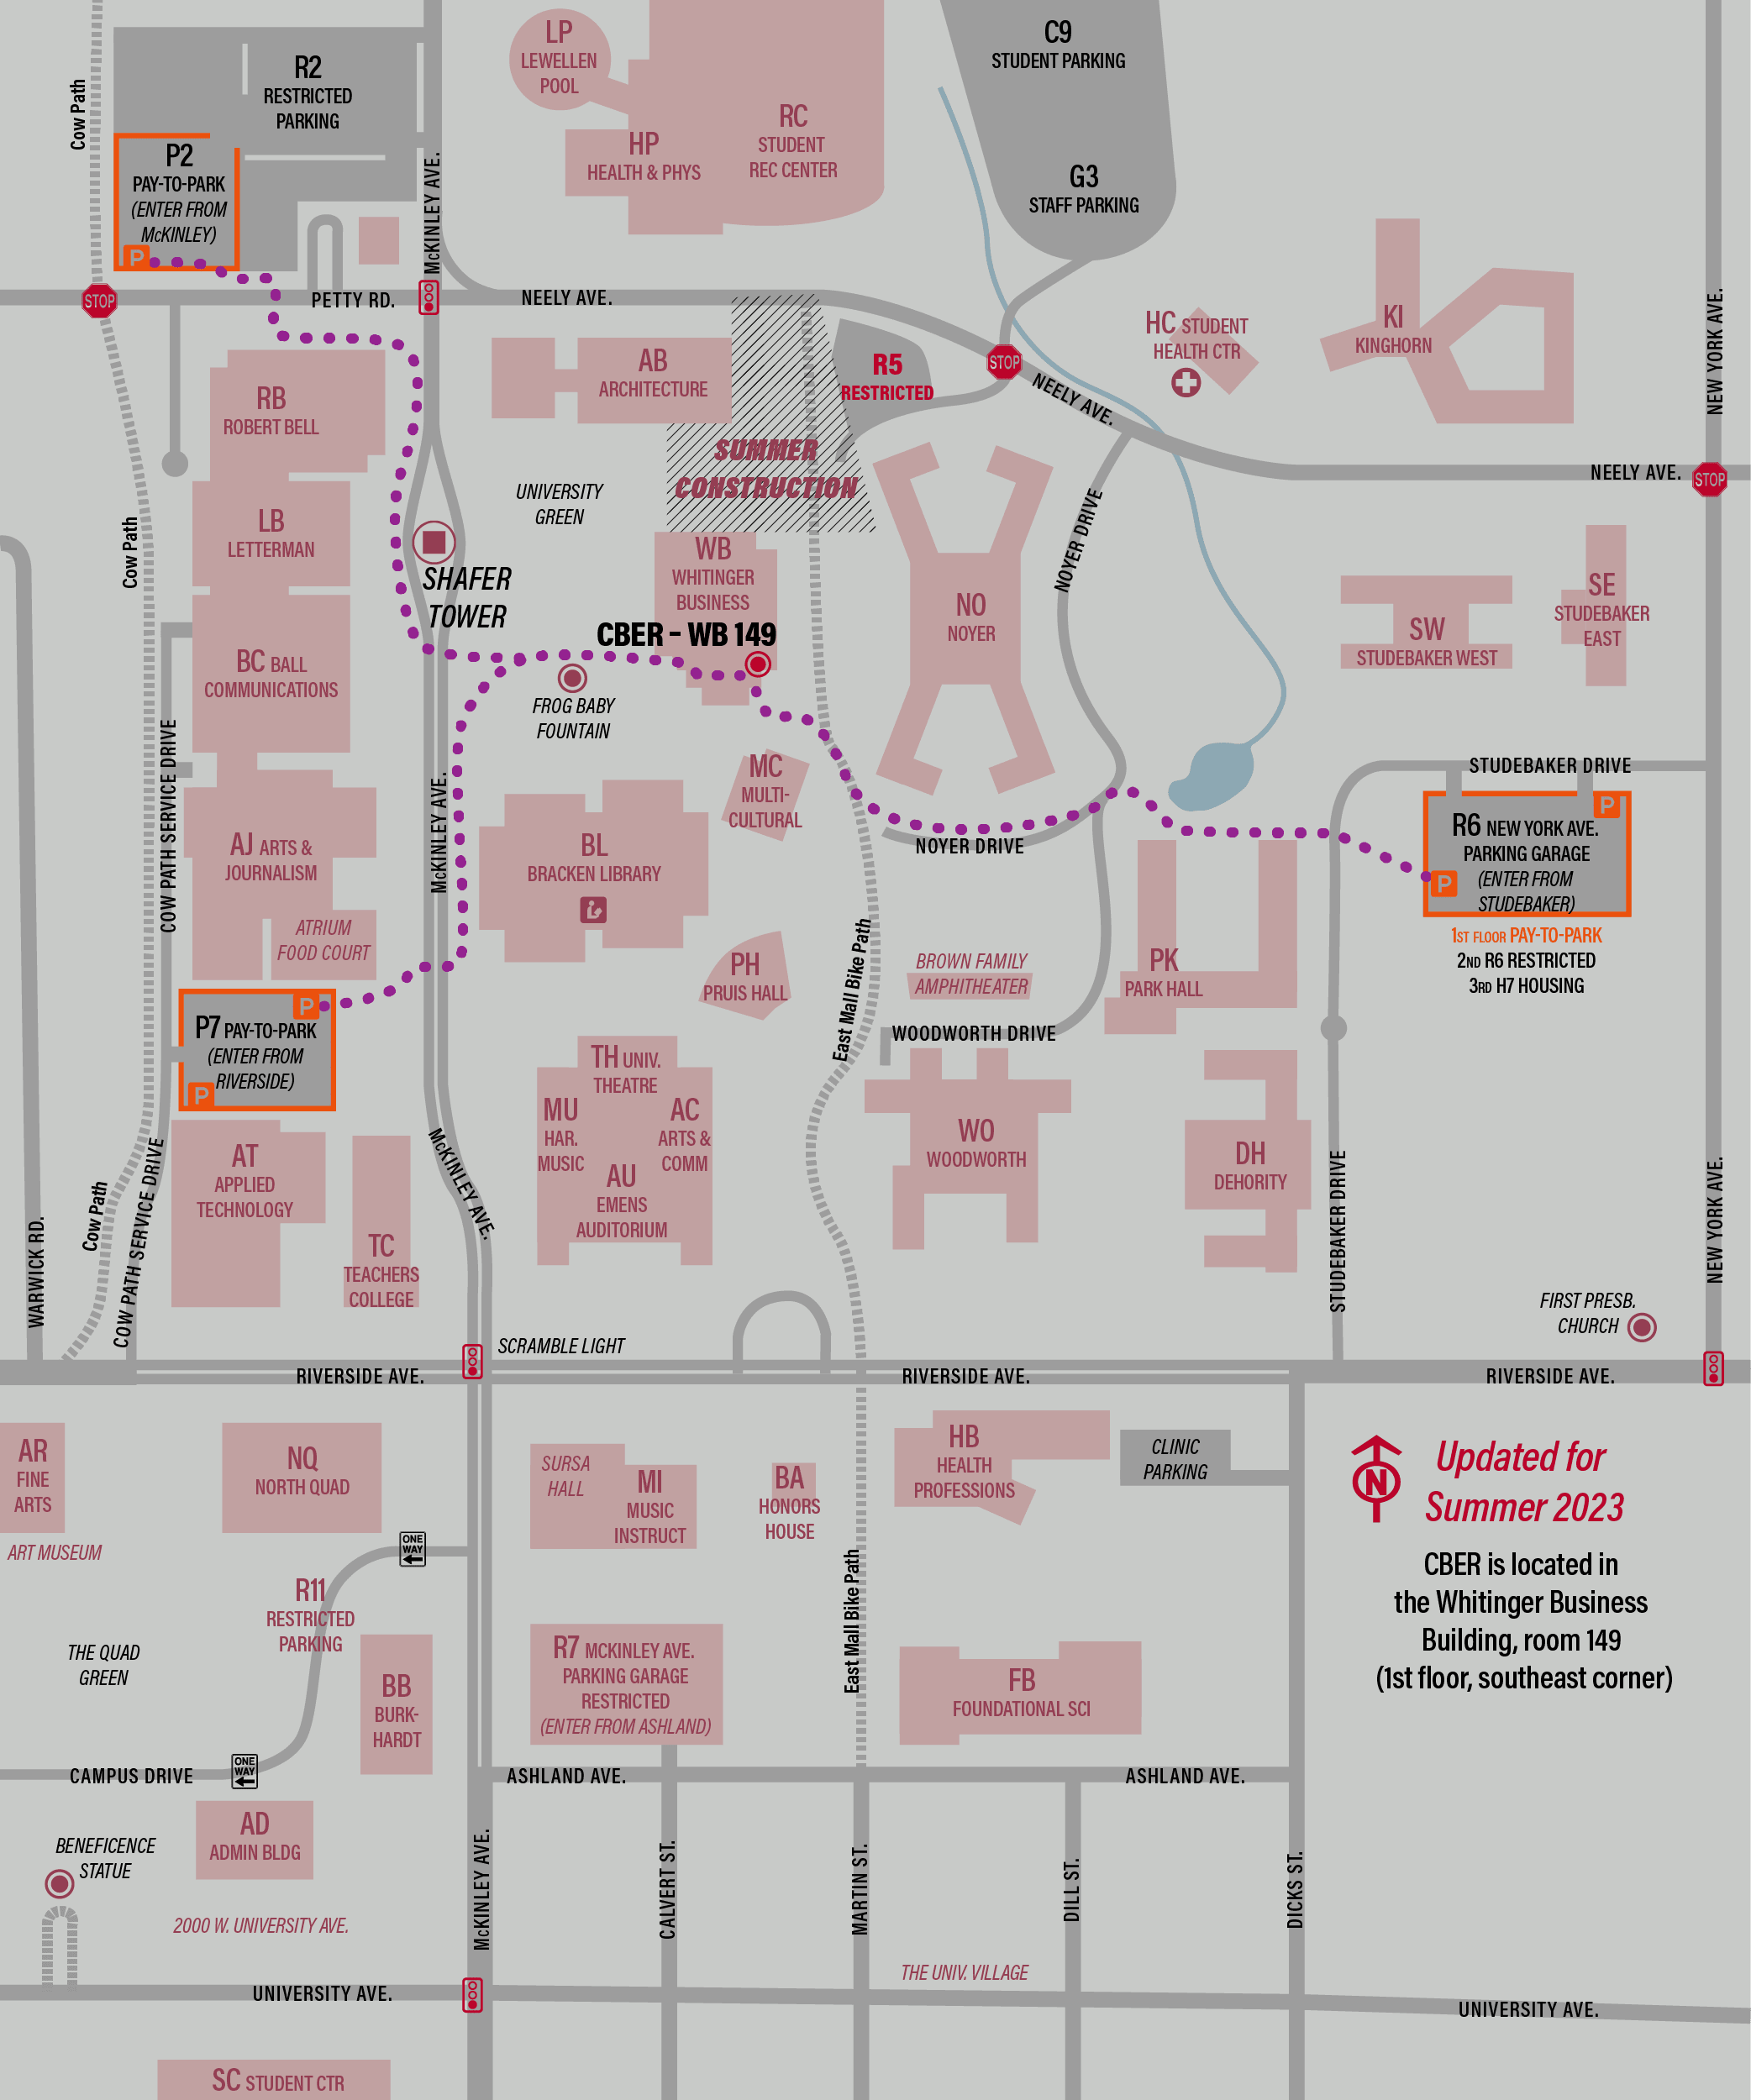 Image: Campus Parking Map to Visit CBER, Summer 2023